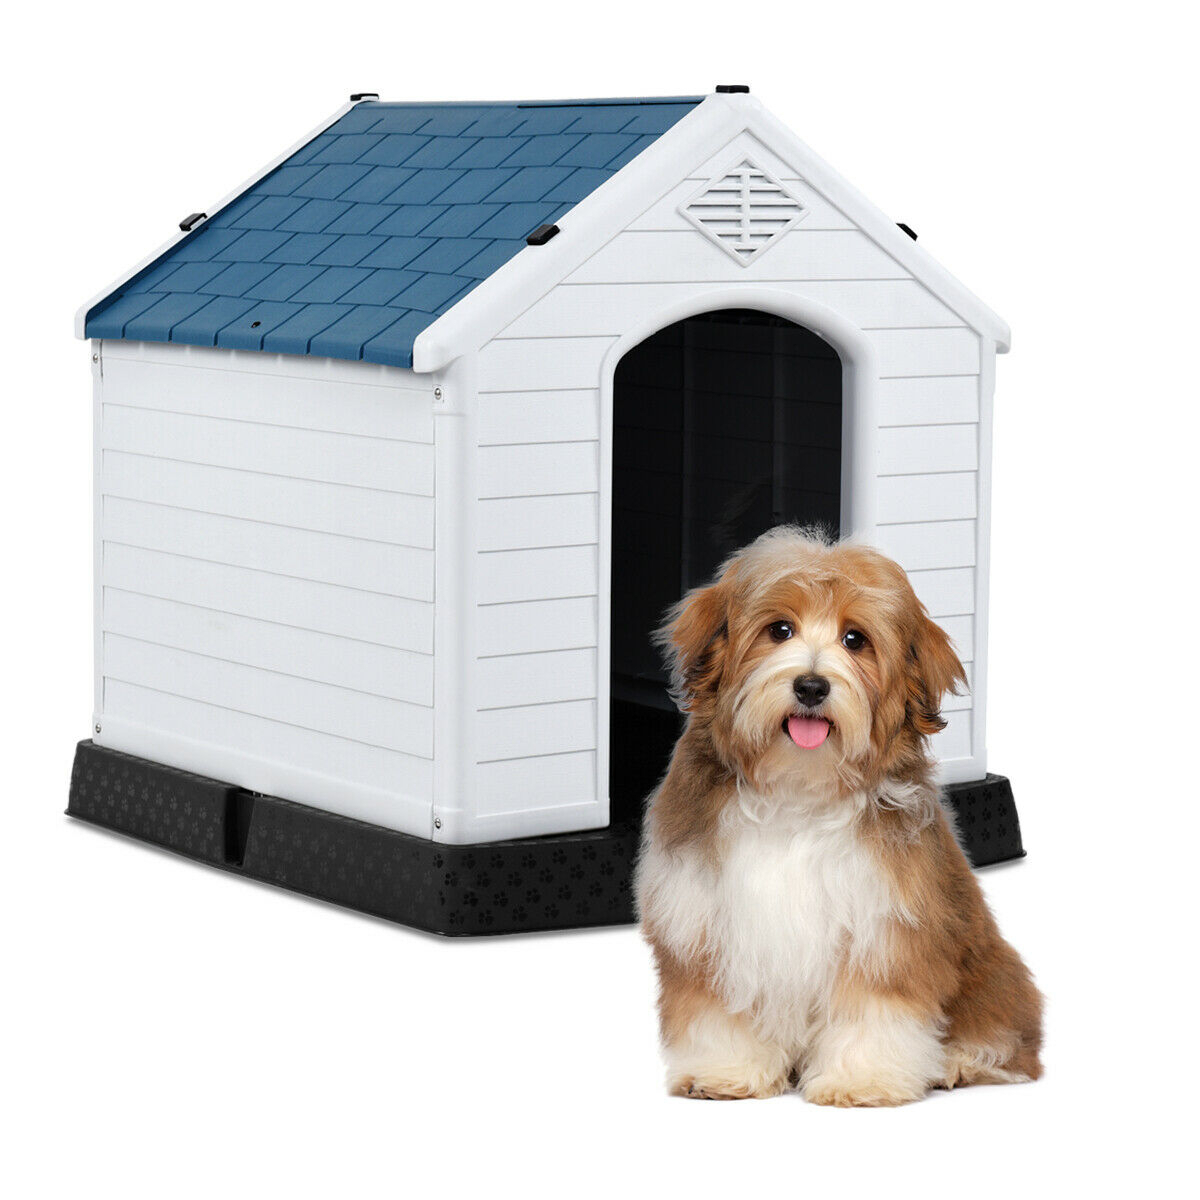 Plastic Dog House Pet Puppy Shelter Waterproof Indoor/Outdoor Ventilate Blue